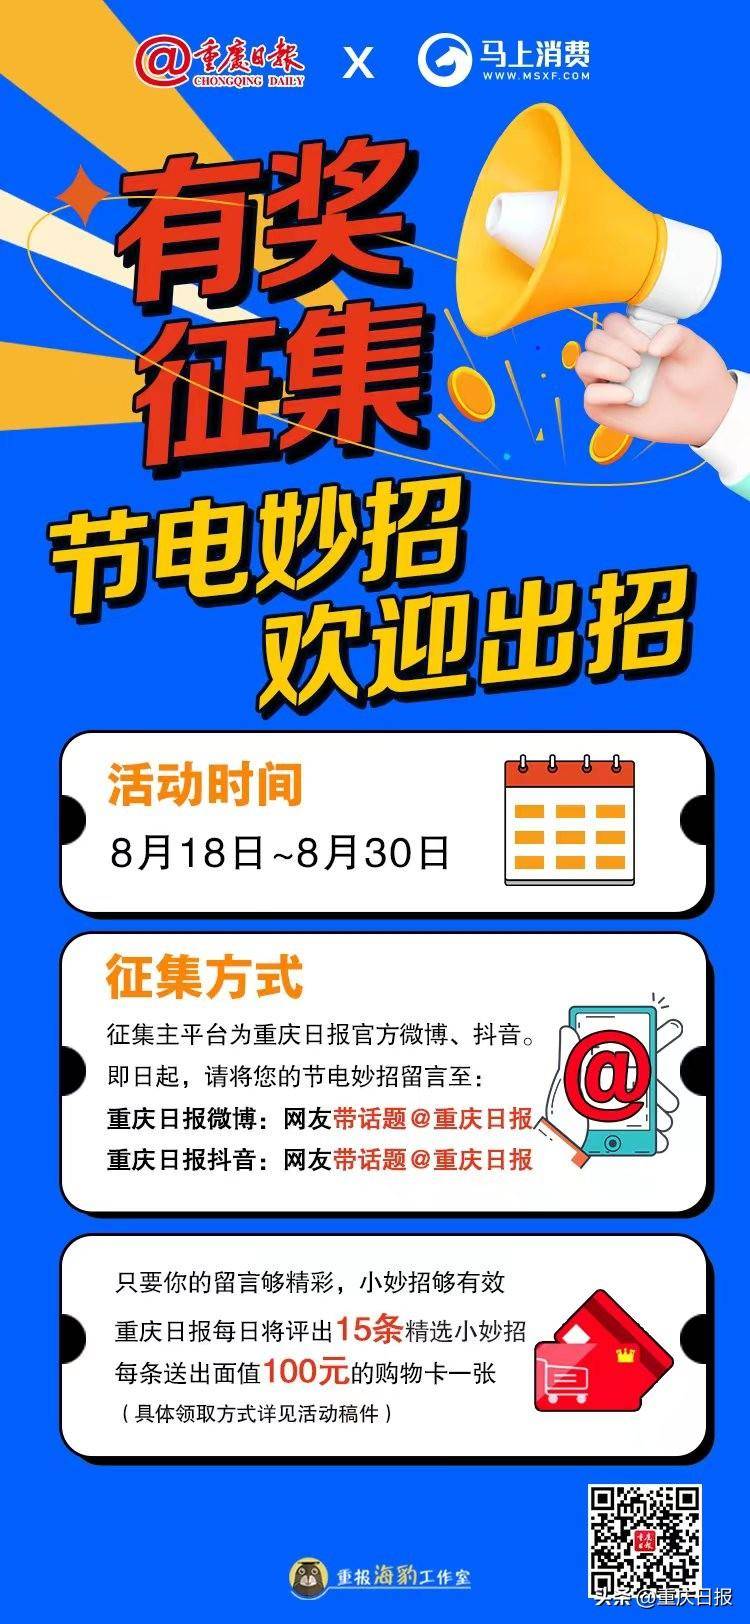 重庆日报的微博，节能行动我参与！携手马上消费，有奖征集“全民节电金点子”